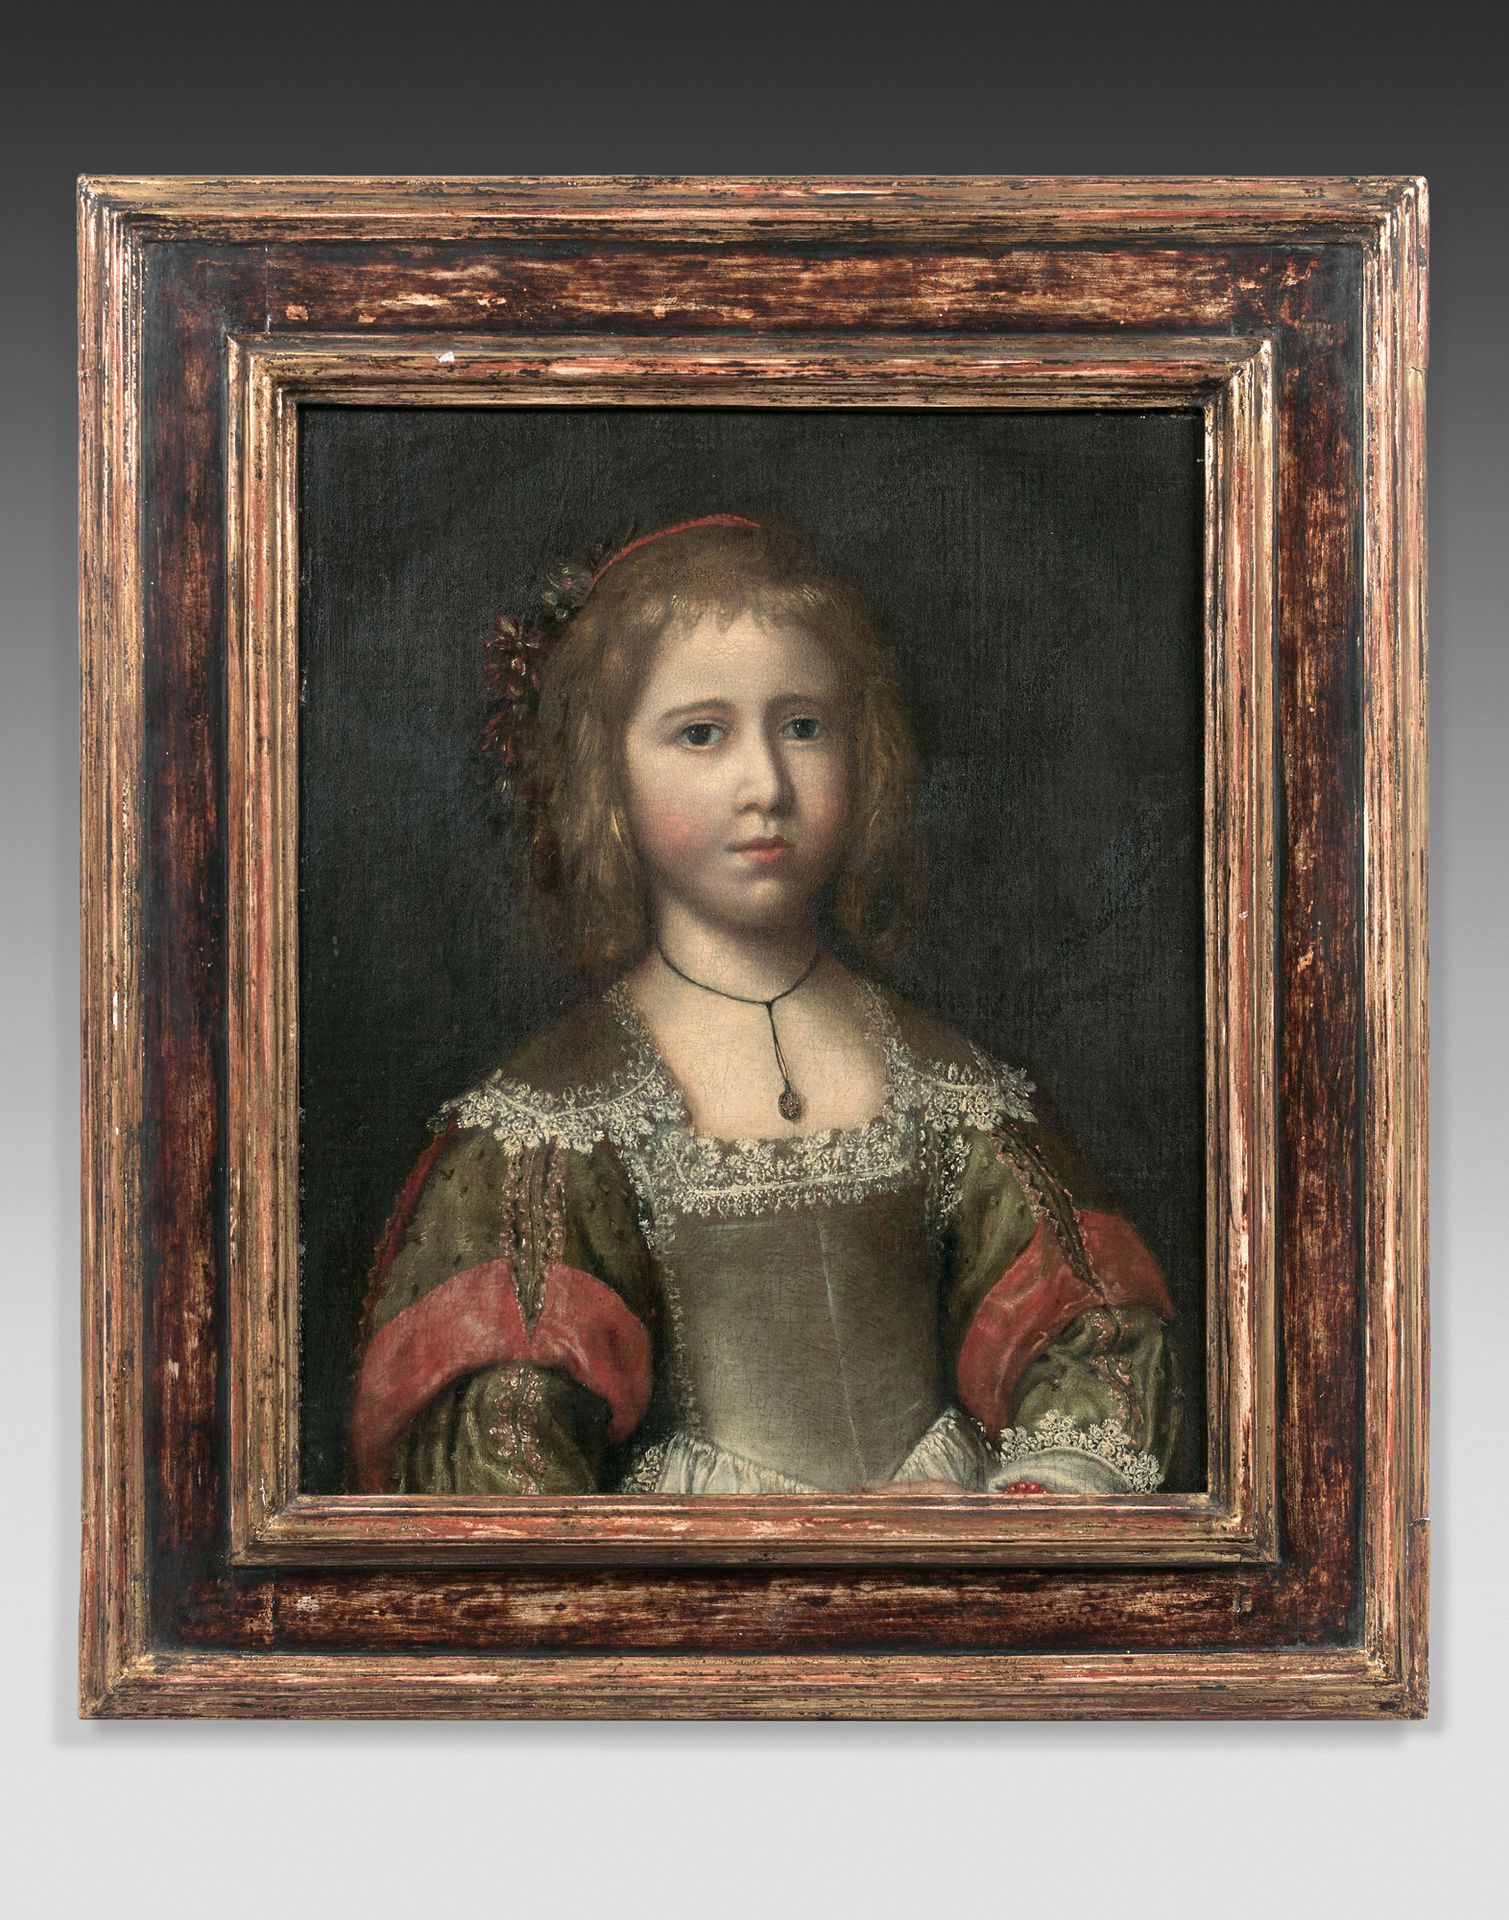 École FRANÇAISE vers 1650 Porträt eines jungen Mädchens
Leinwand.
53 x 43,5 cm